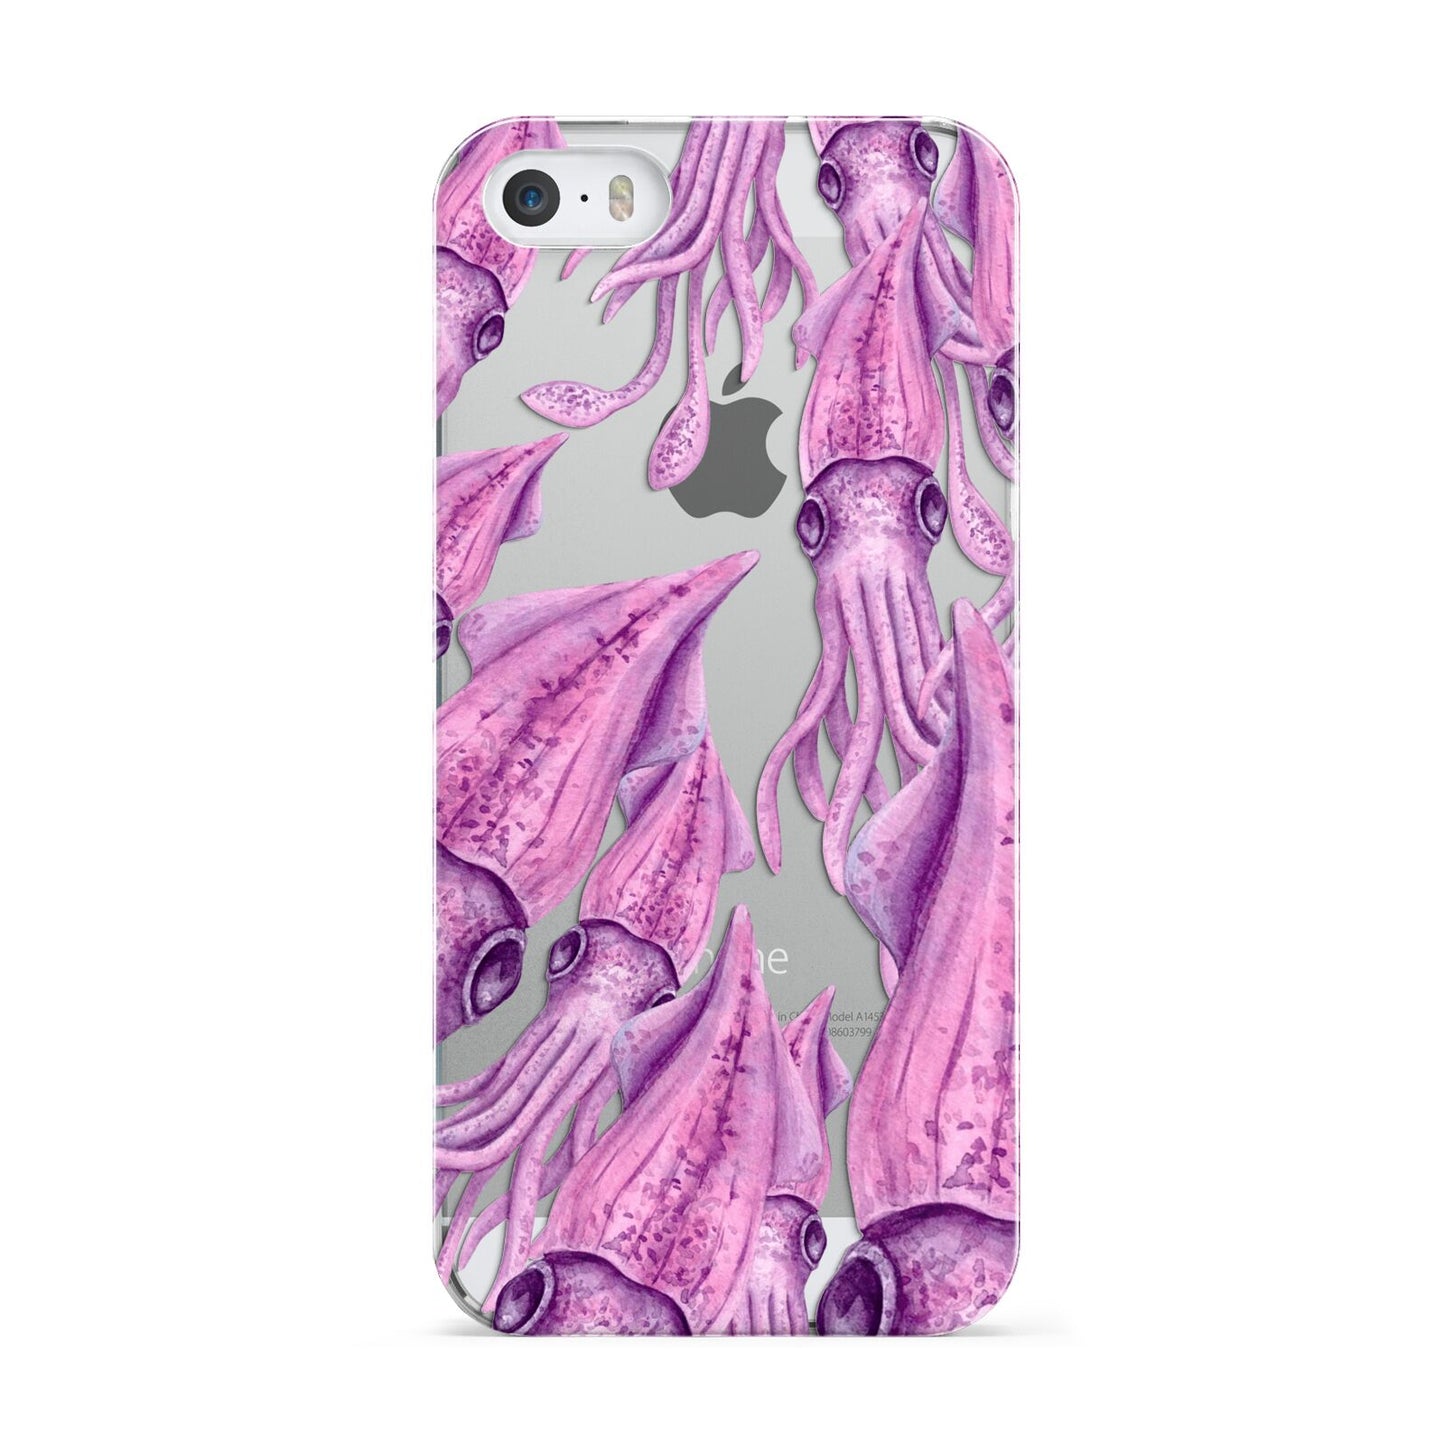 Squid Apple iPhone 5 Case